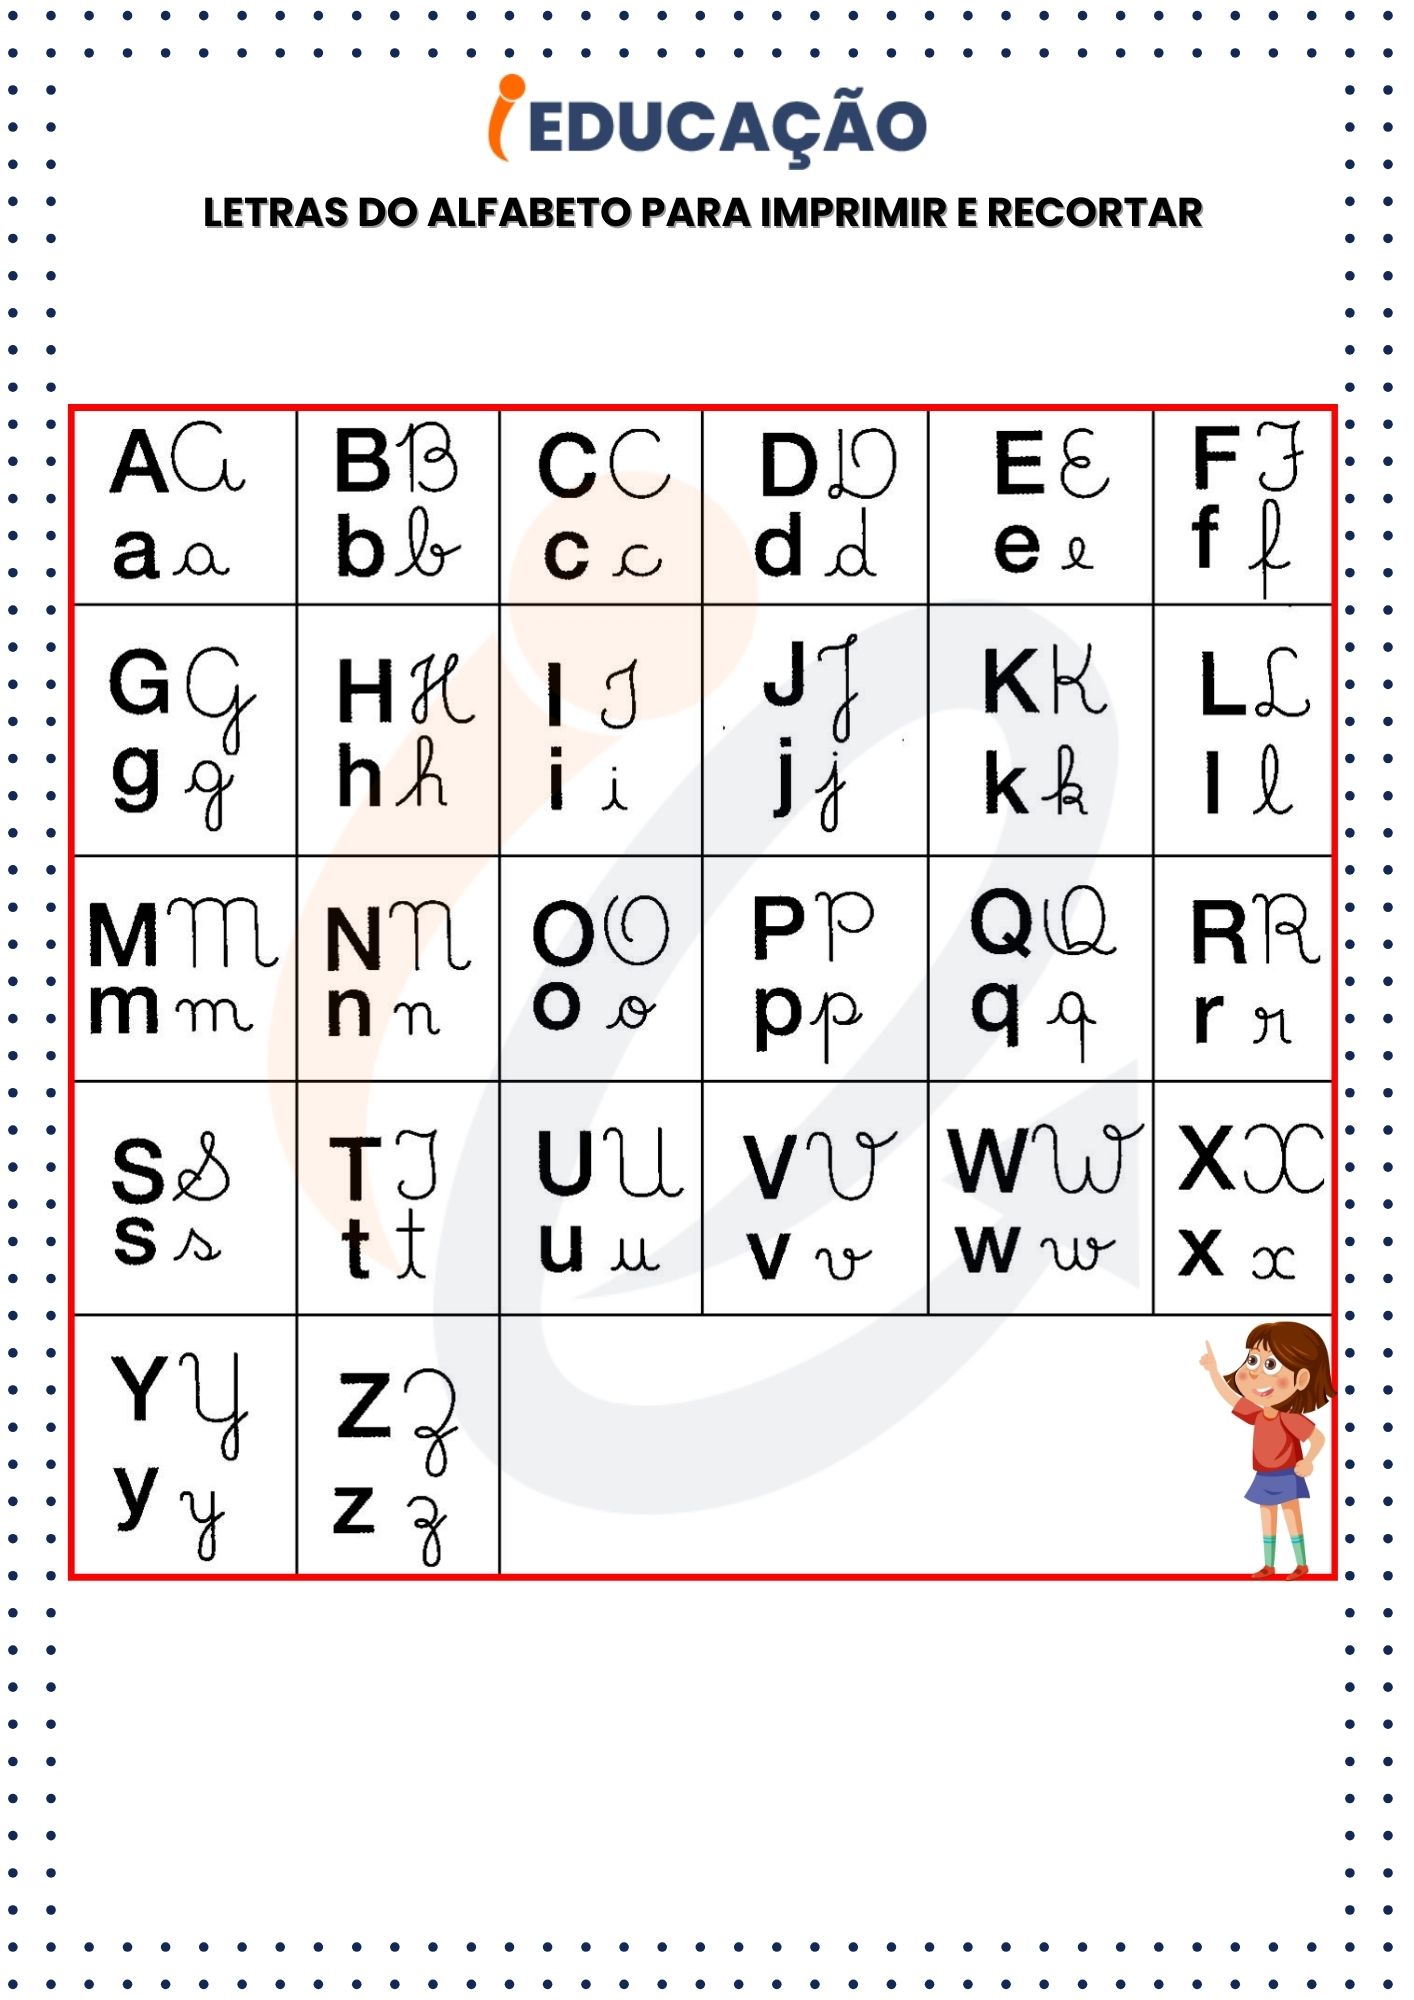 Letras do Alfabeto Para Imprimir cursivas, bastão, maiúscula e Recortar